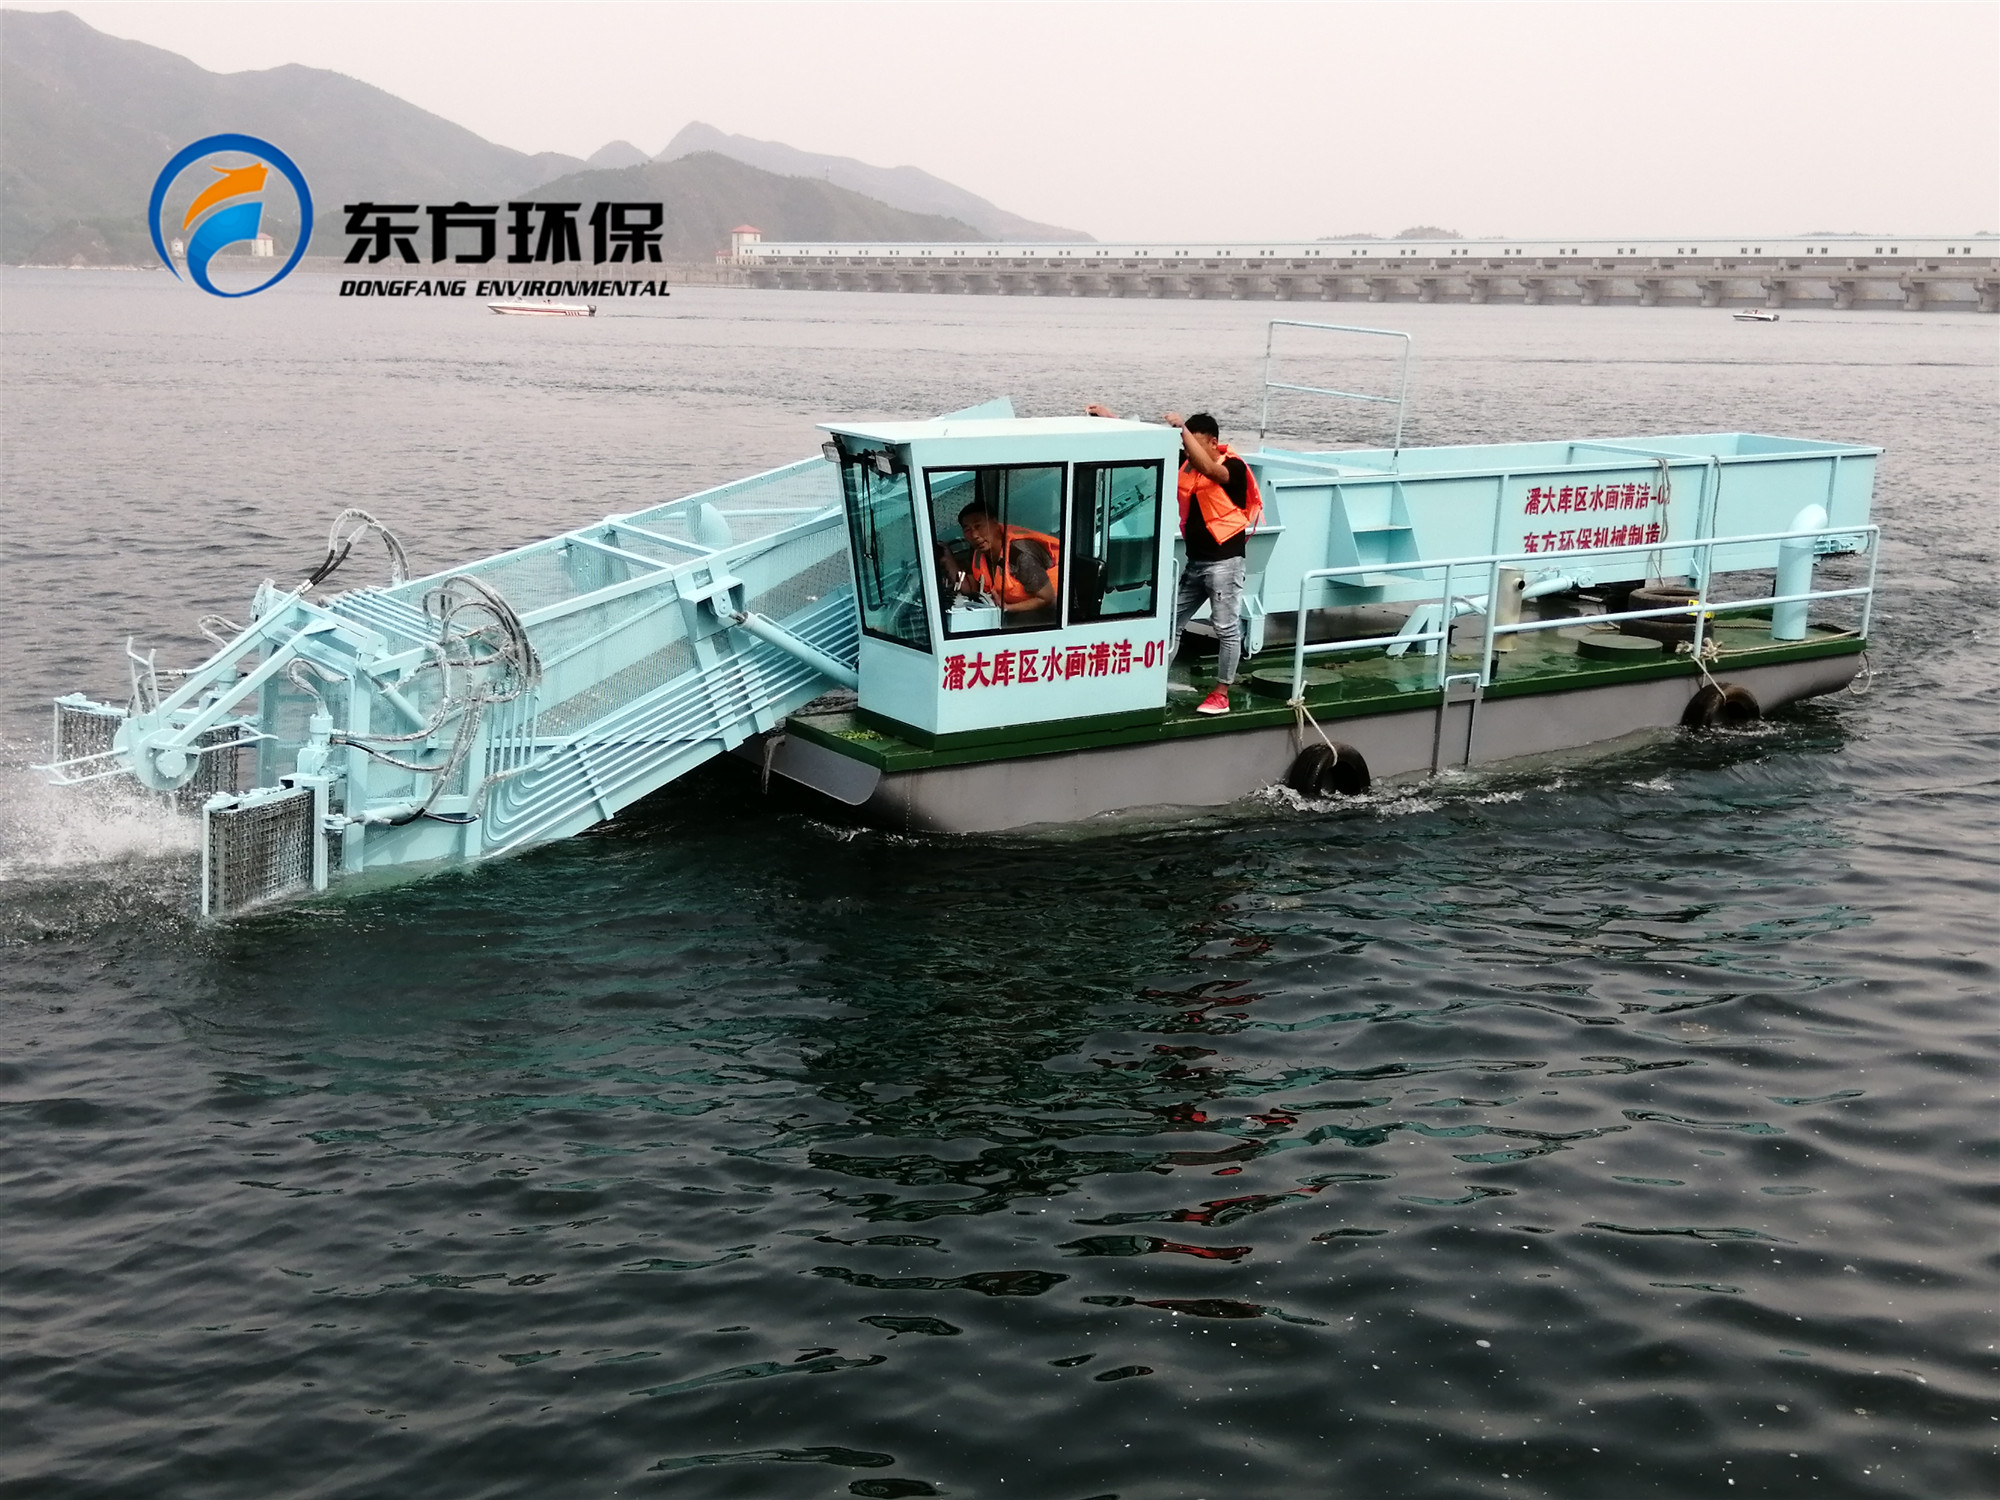 辽宁省辽阳市太子河景区购买的DF-BJ85型全自动保洁船